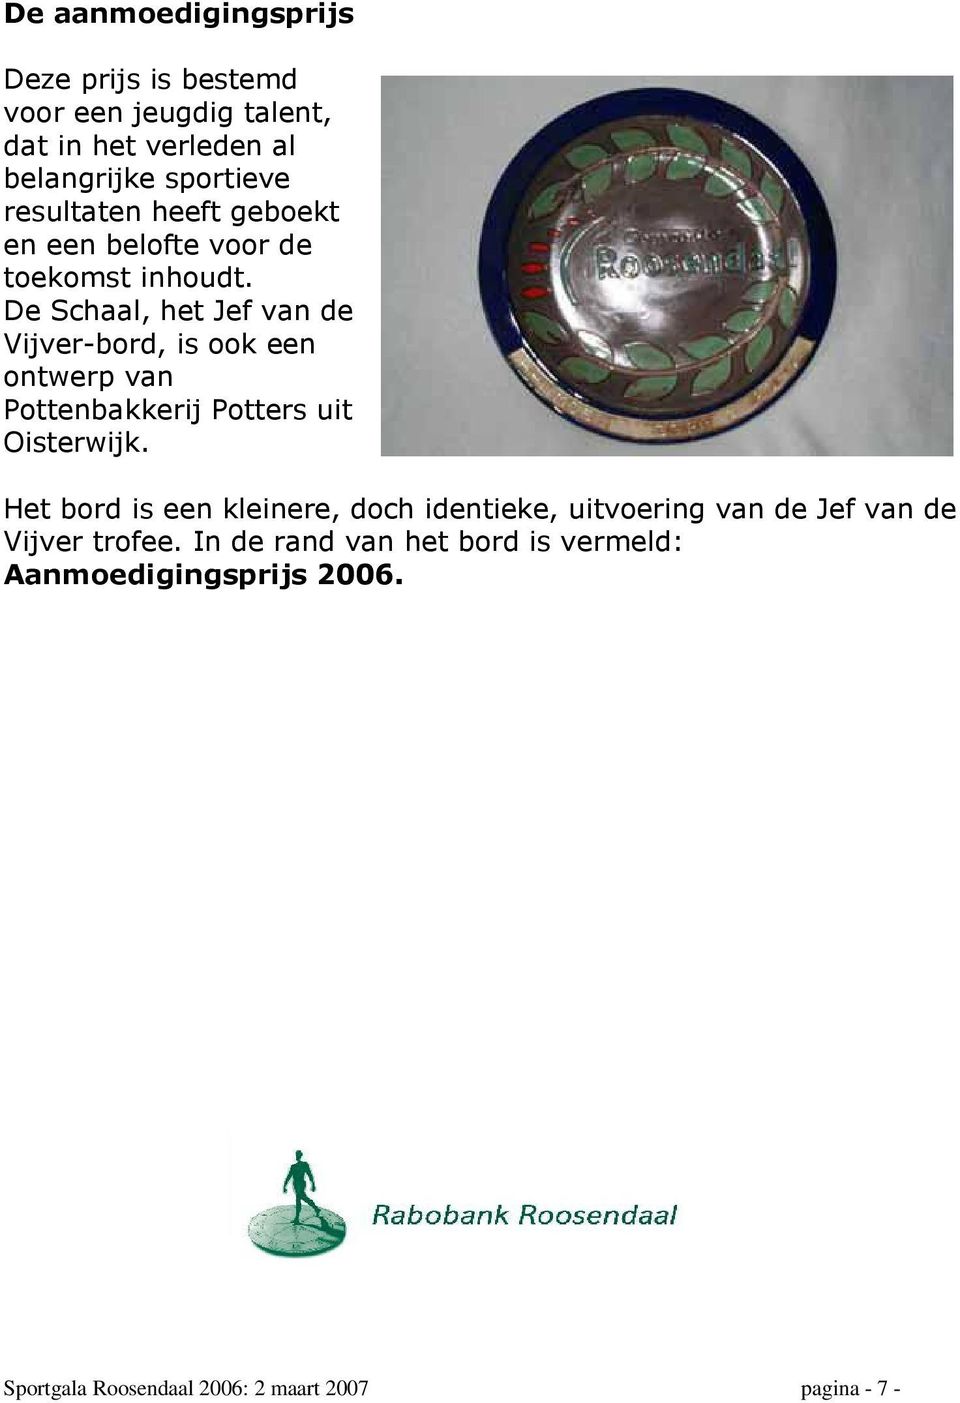 De Schaal, het Jef van de Vijver-bord, is ook een ontwerp van Pottenbakkerij Potters uit Oisterwijk.